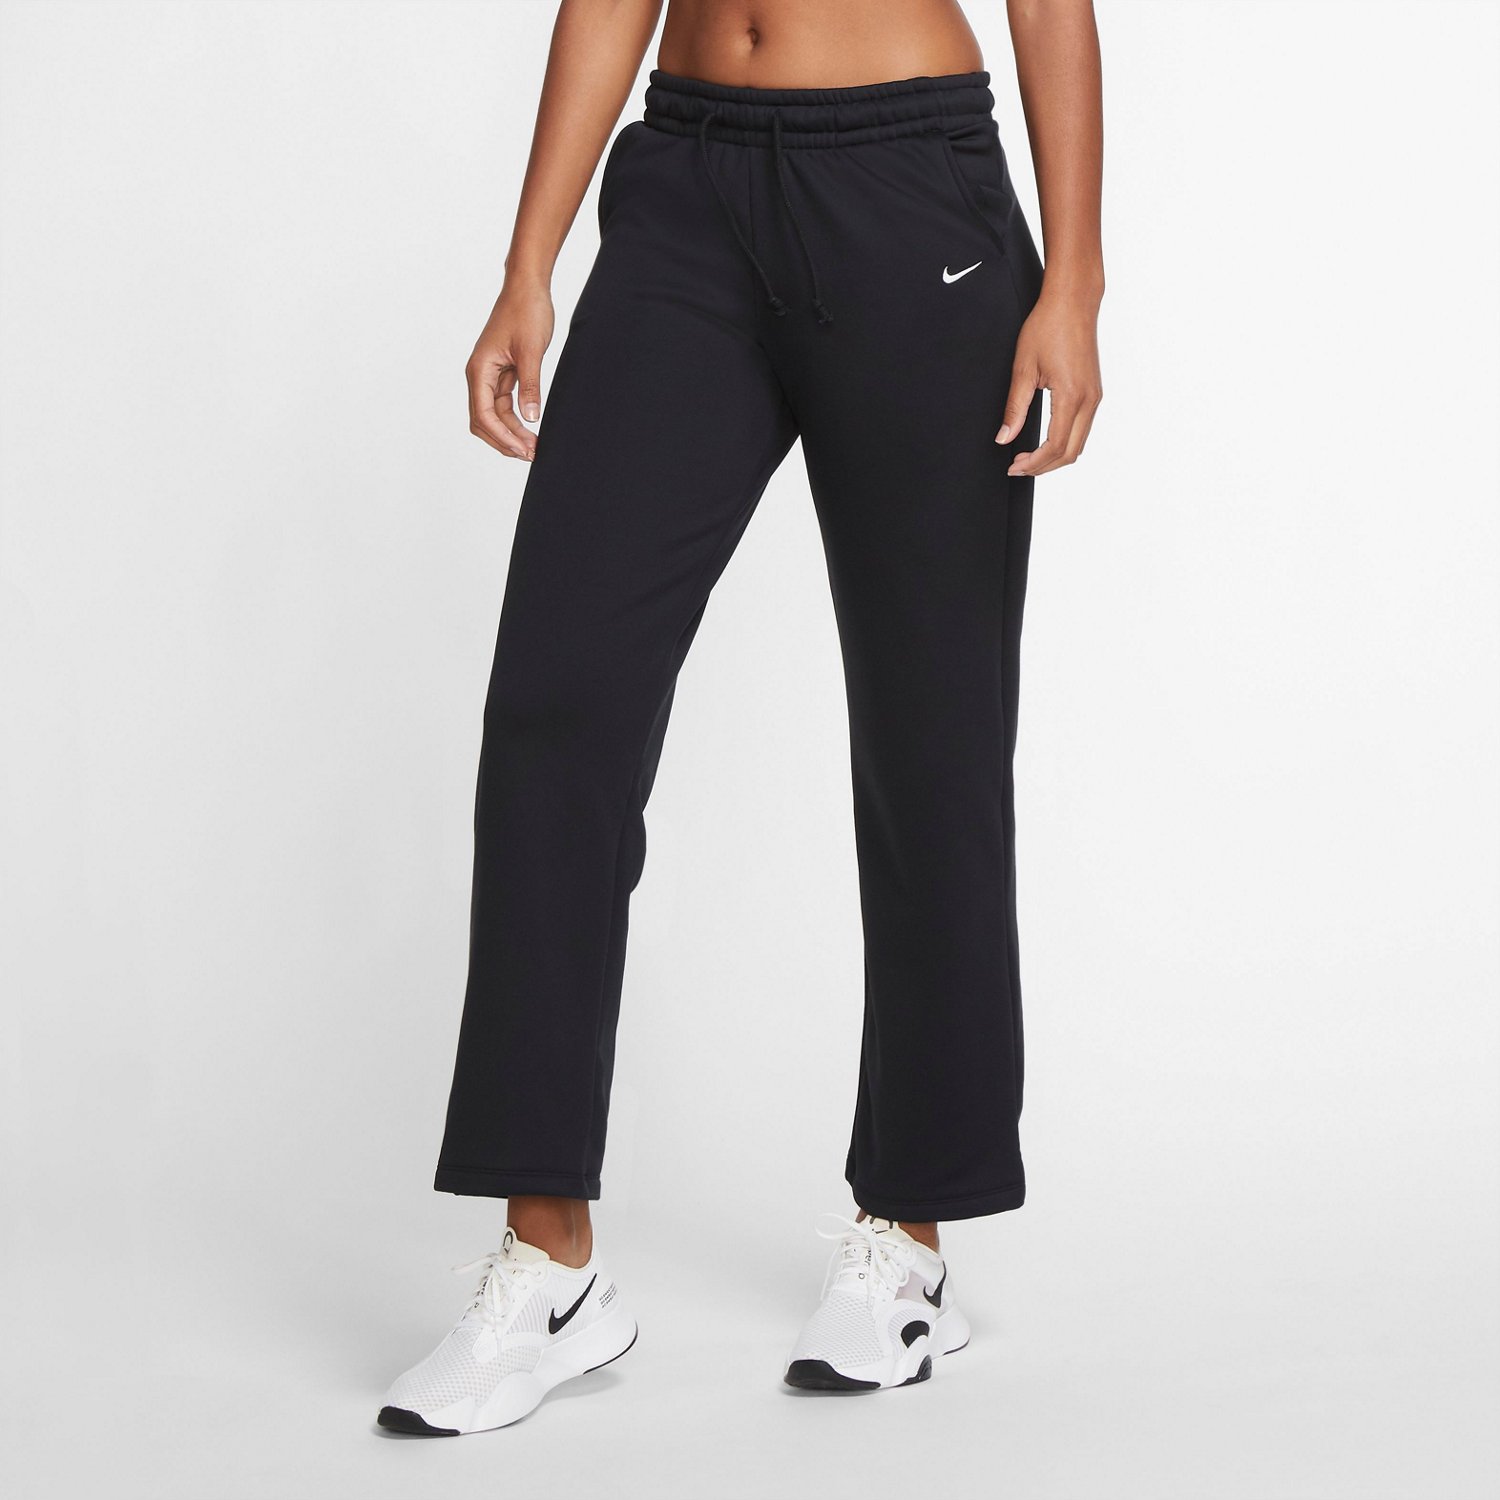 Nike Women's Workout Pants